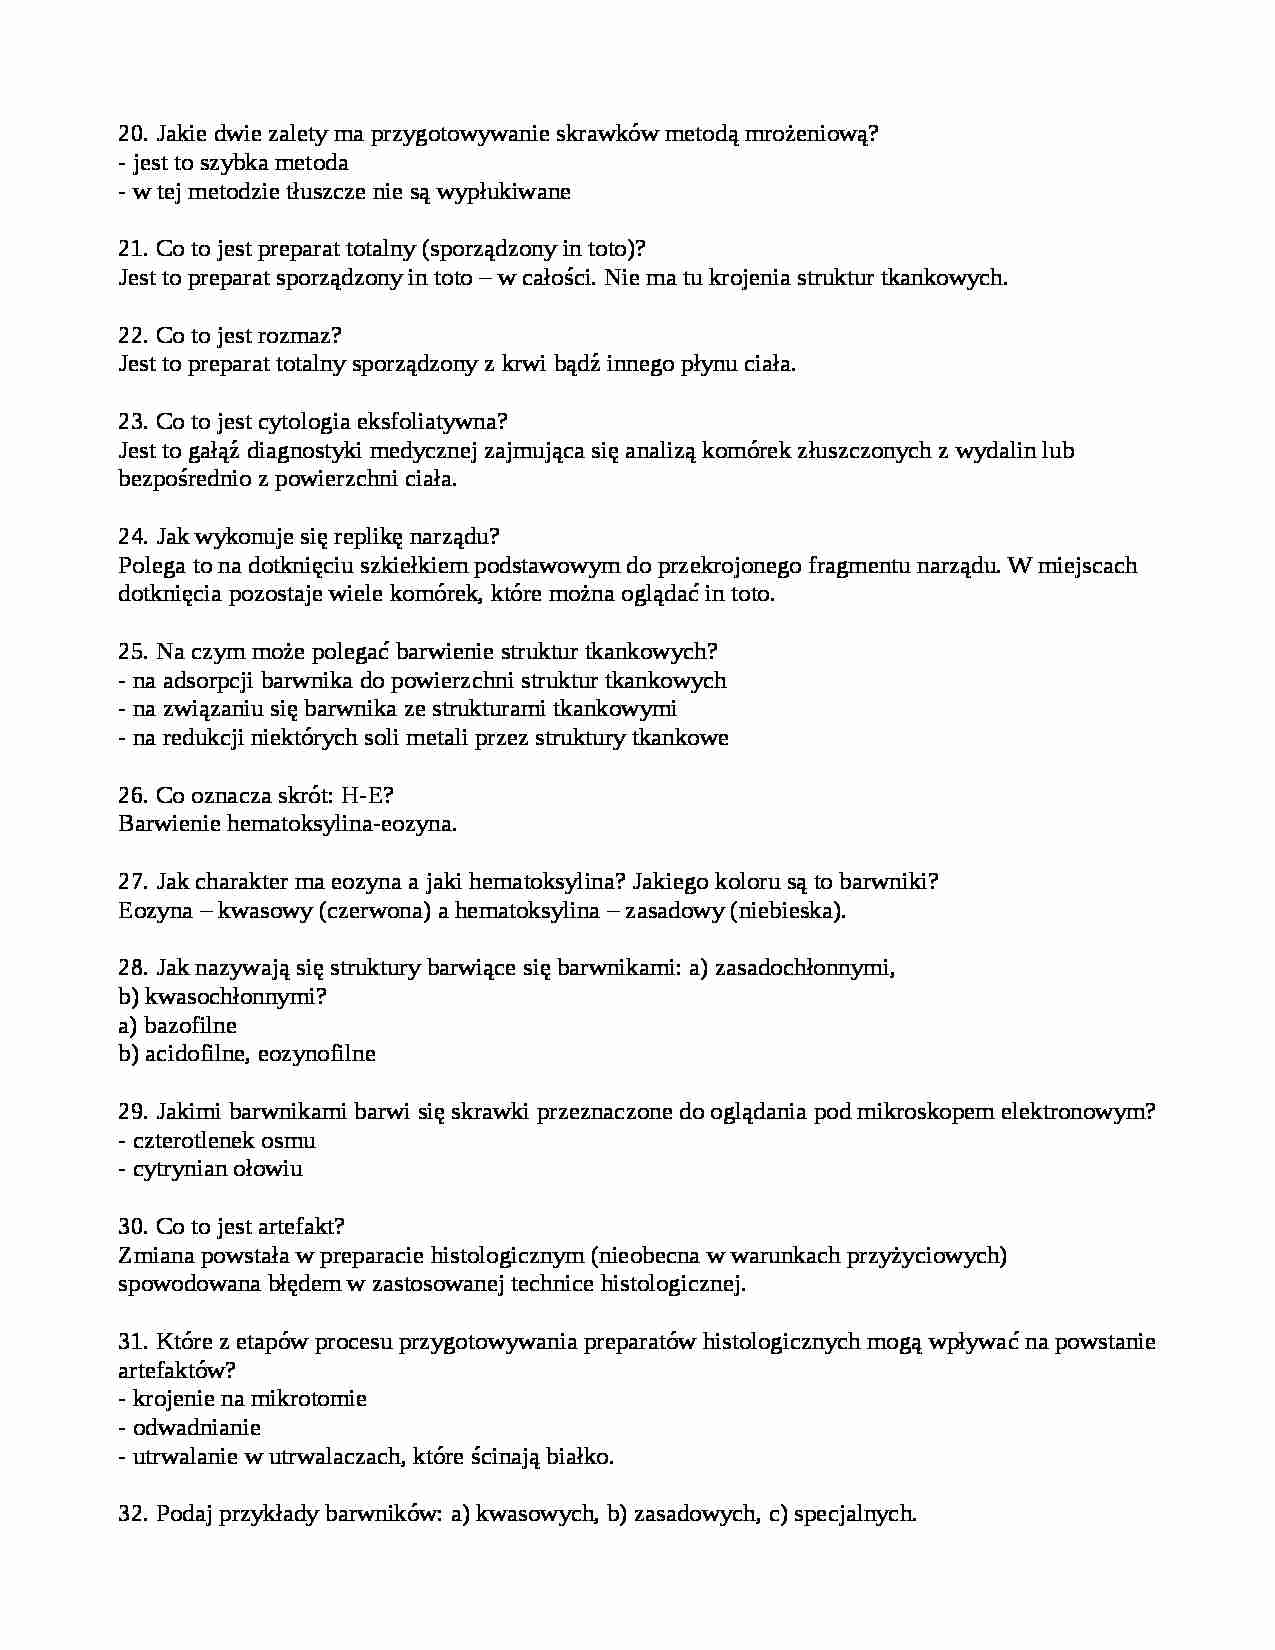 Histologia - pytania  i odpowiedzi  - strona 1